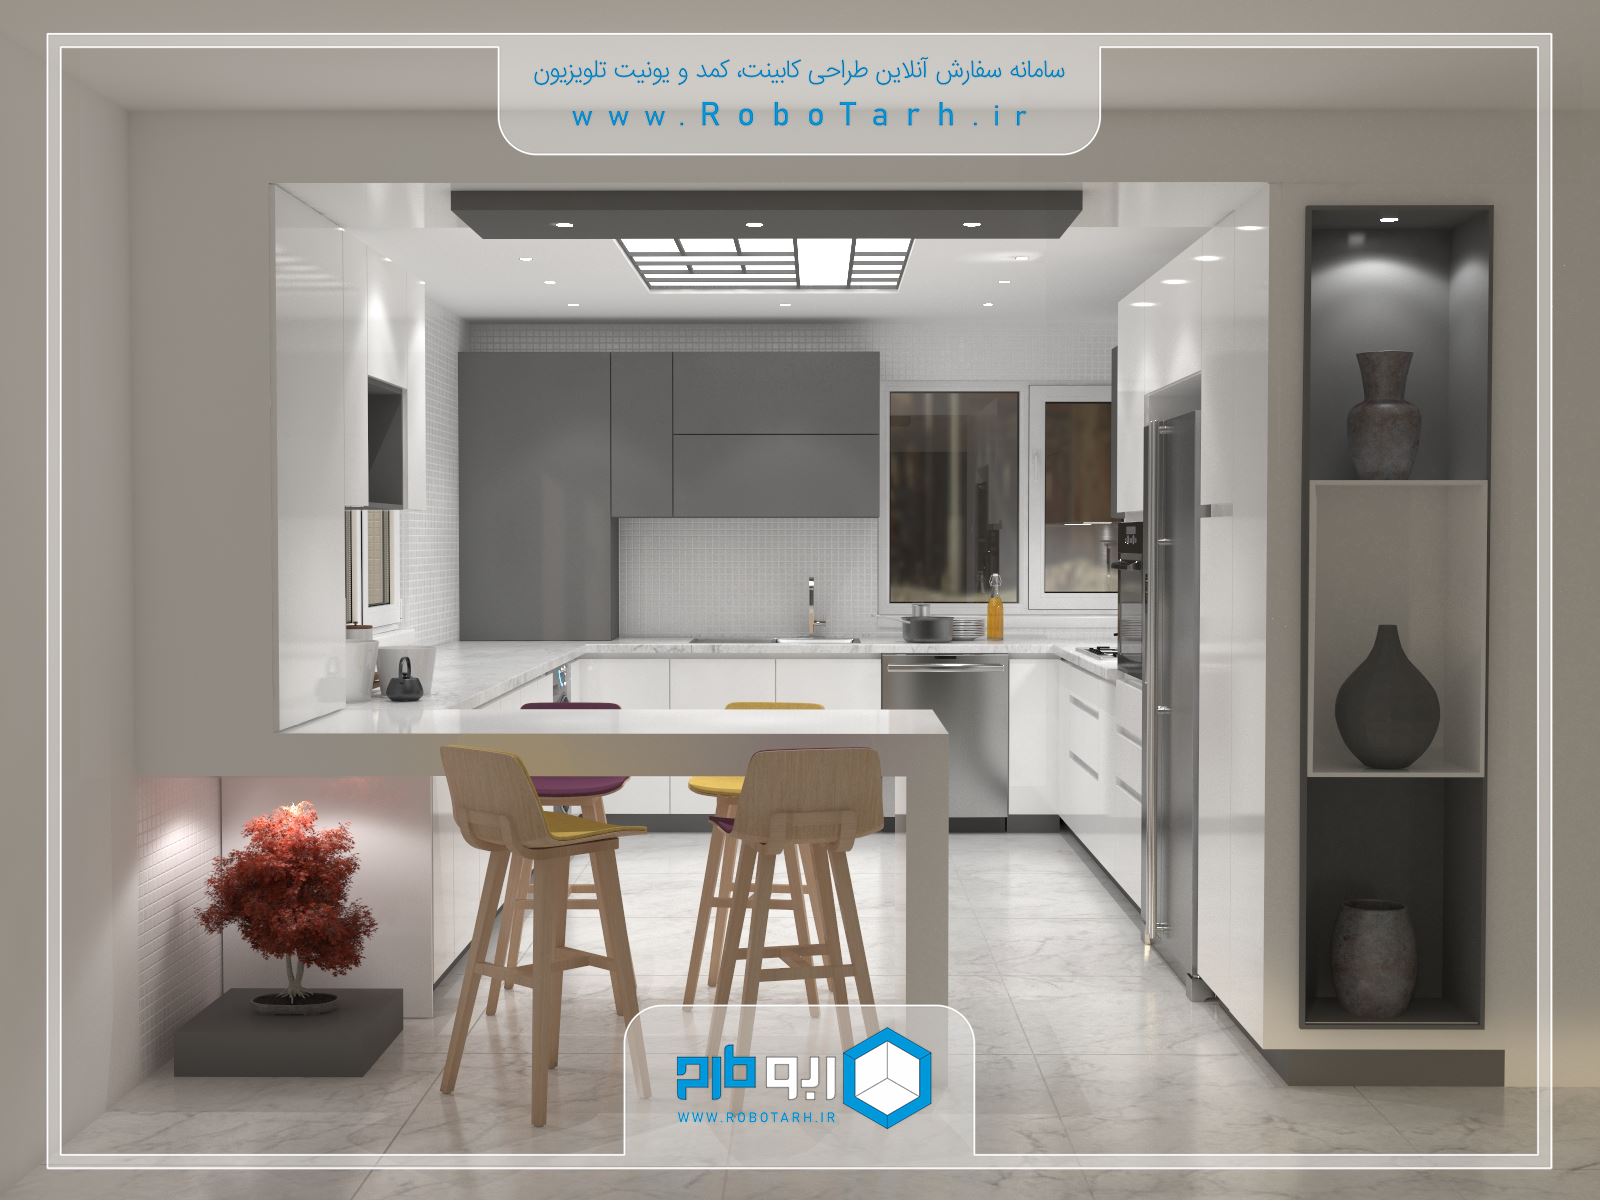 طراحی کابینت آشپزخانه به سبک مدرن با ترکیب رنگ خاکستری و سفید - ربوطرح